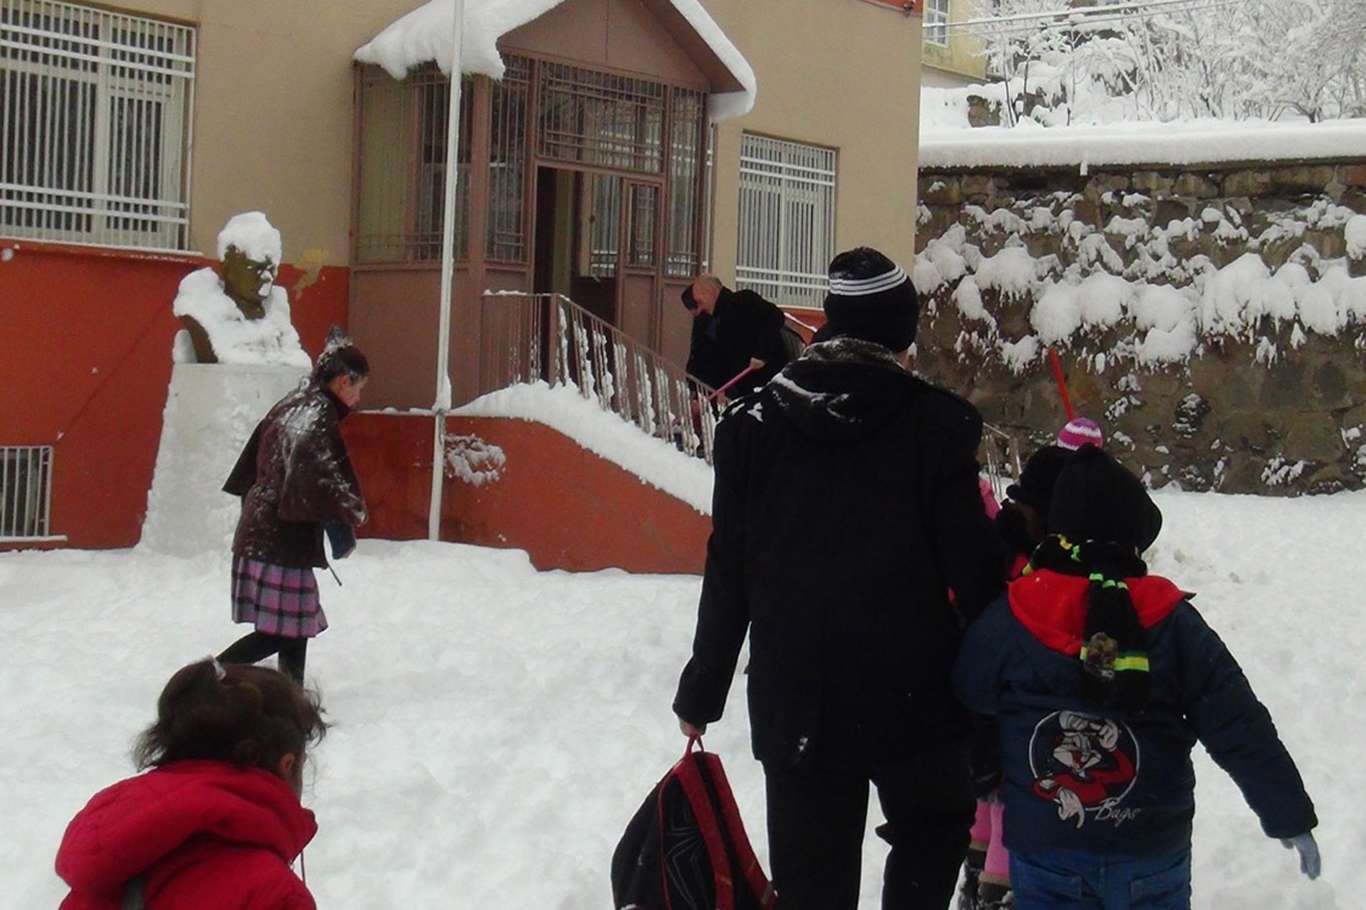 Yoğun kar yağışı nedeni ile Ağrı'nın dört ilçesinde okullar tatil edildi